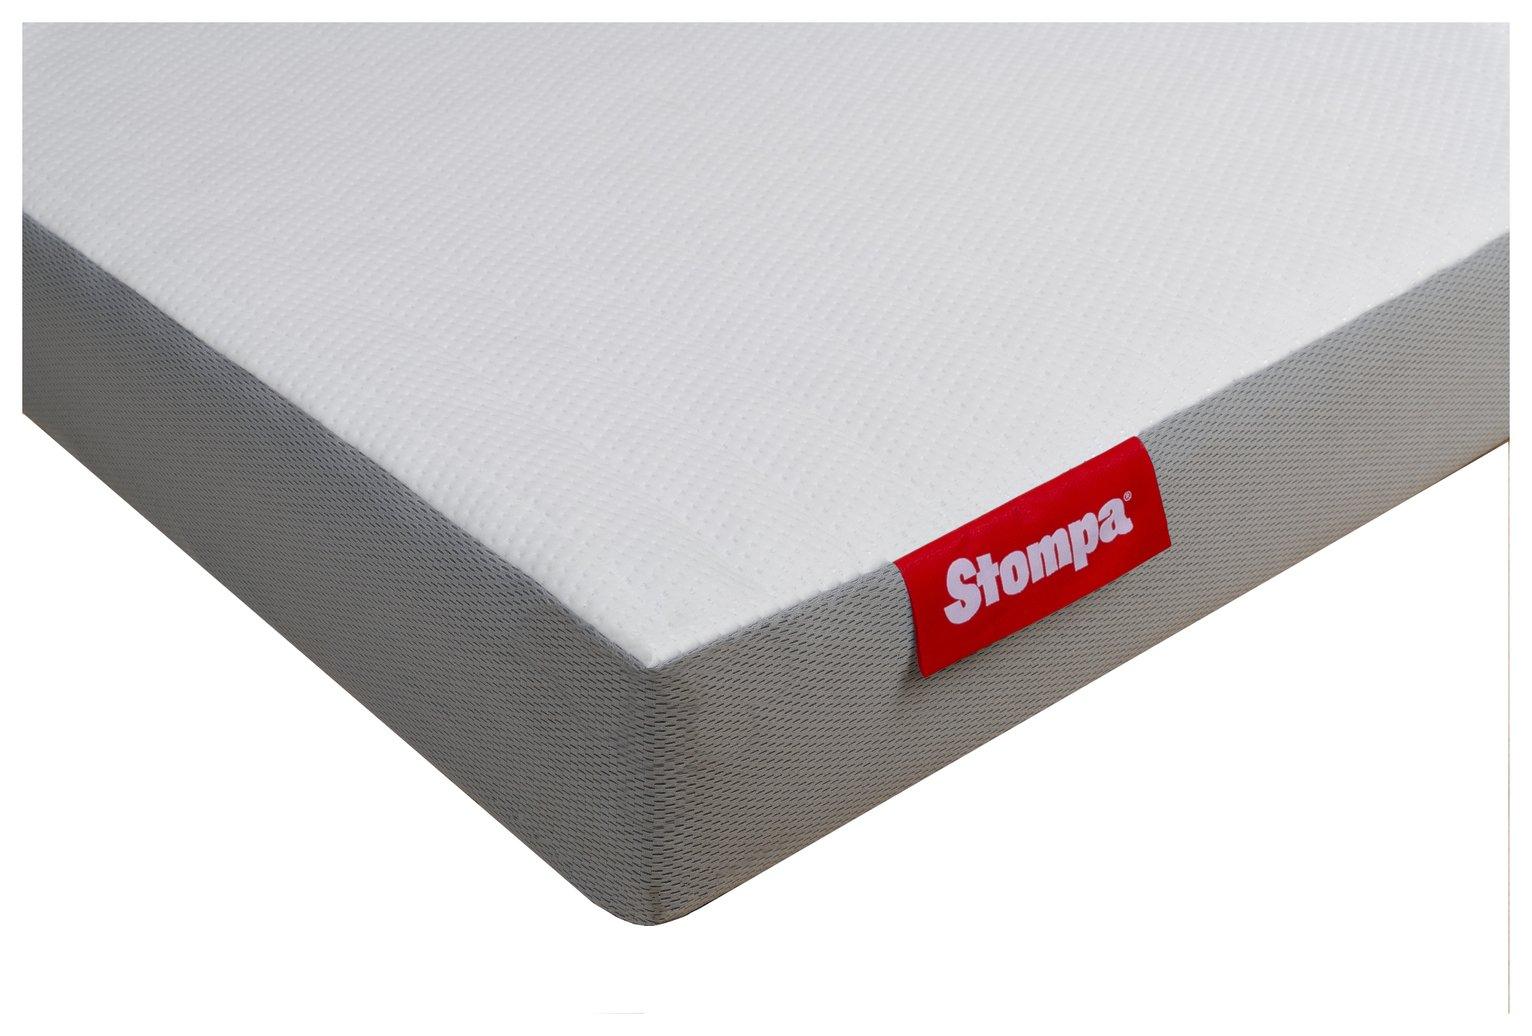 Stompa S Flex Air Flow Pocket Sprung Mattress - Single